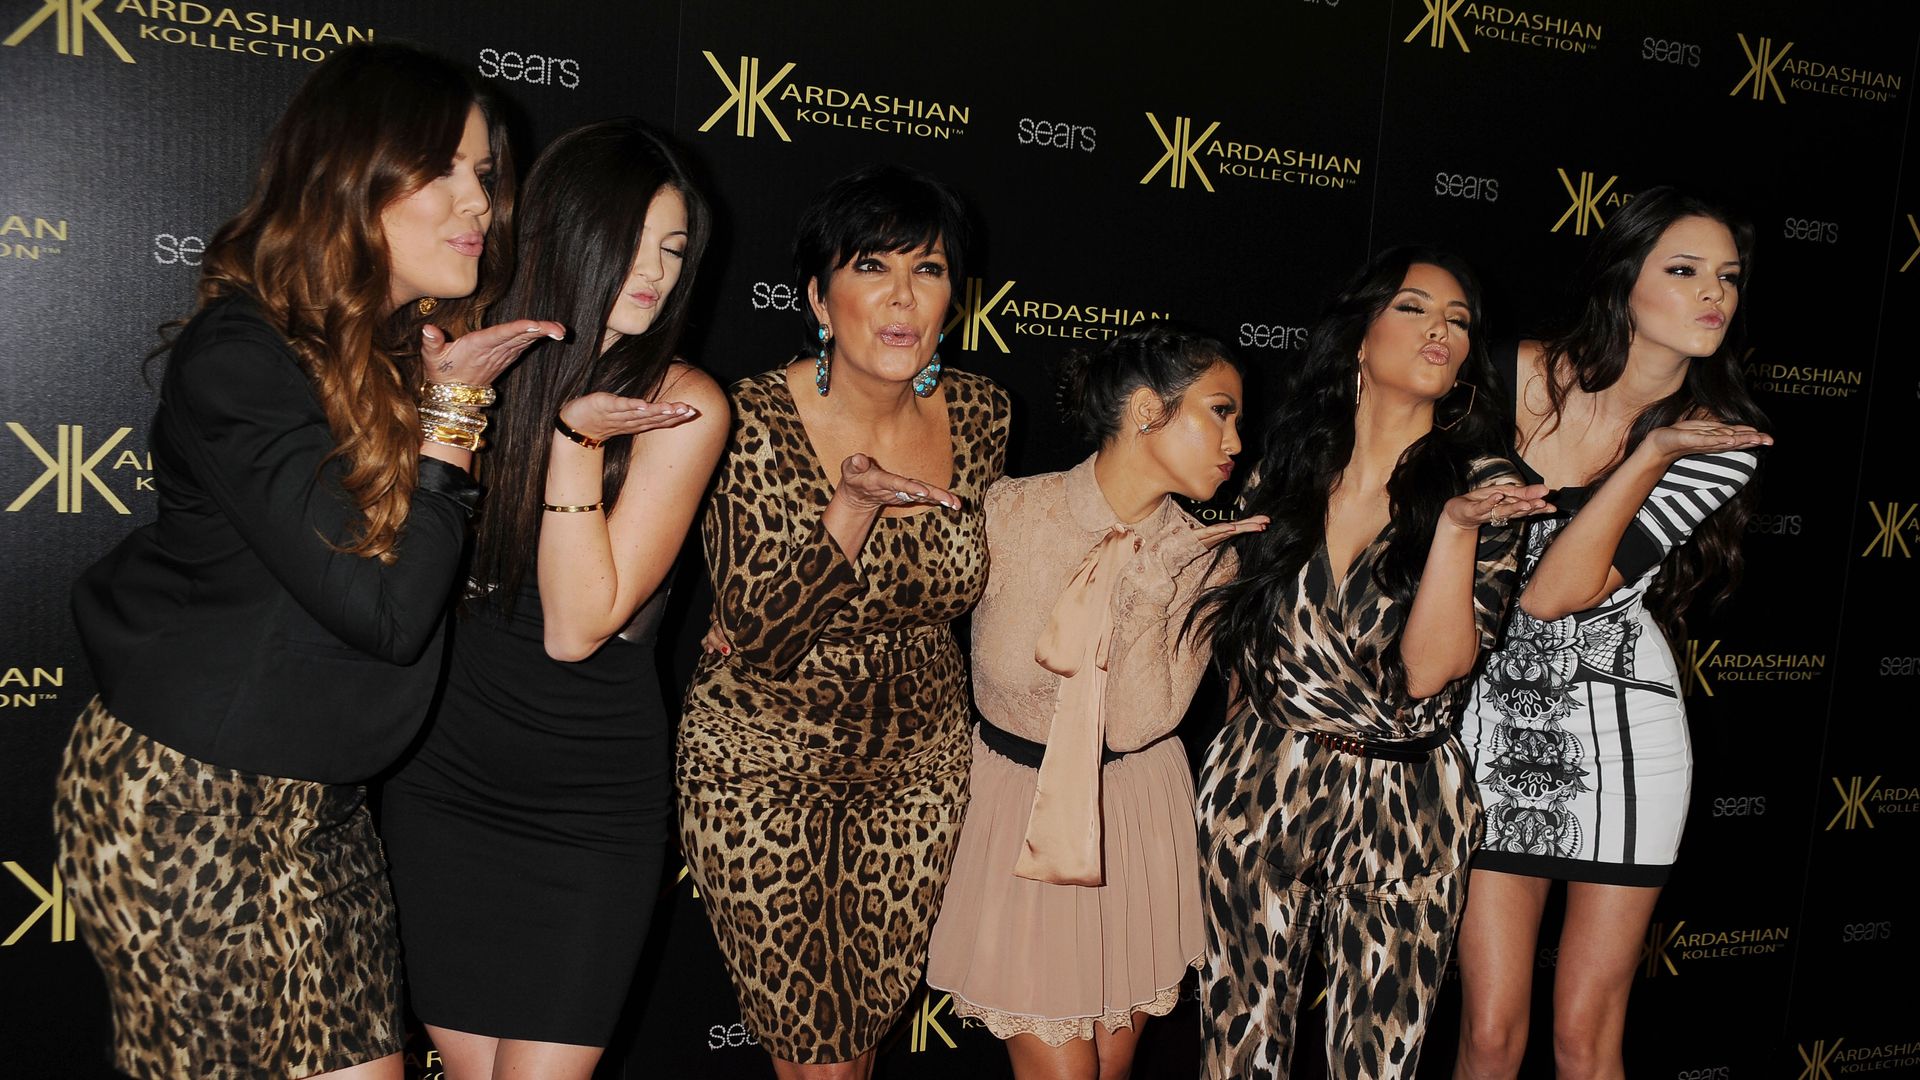 Kourtney Kardashian, Kylie Jenner, Kris Jenner, Kourtney Kardashian, Kim Kardashian, and Kendall Jenner stood together blowing kisses on a red carpet